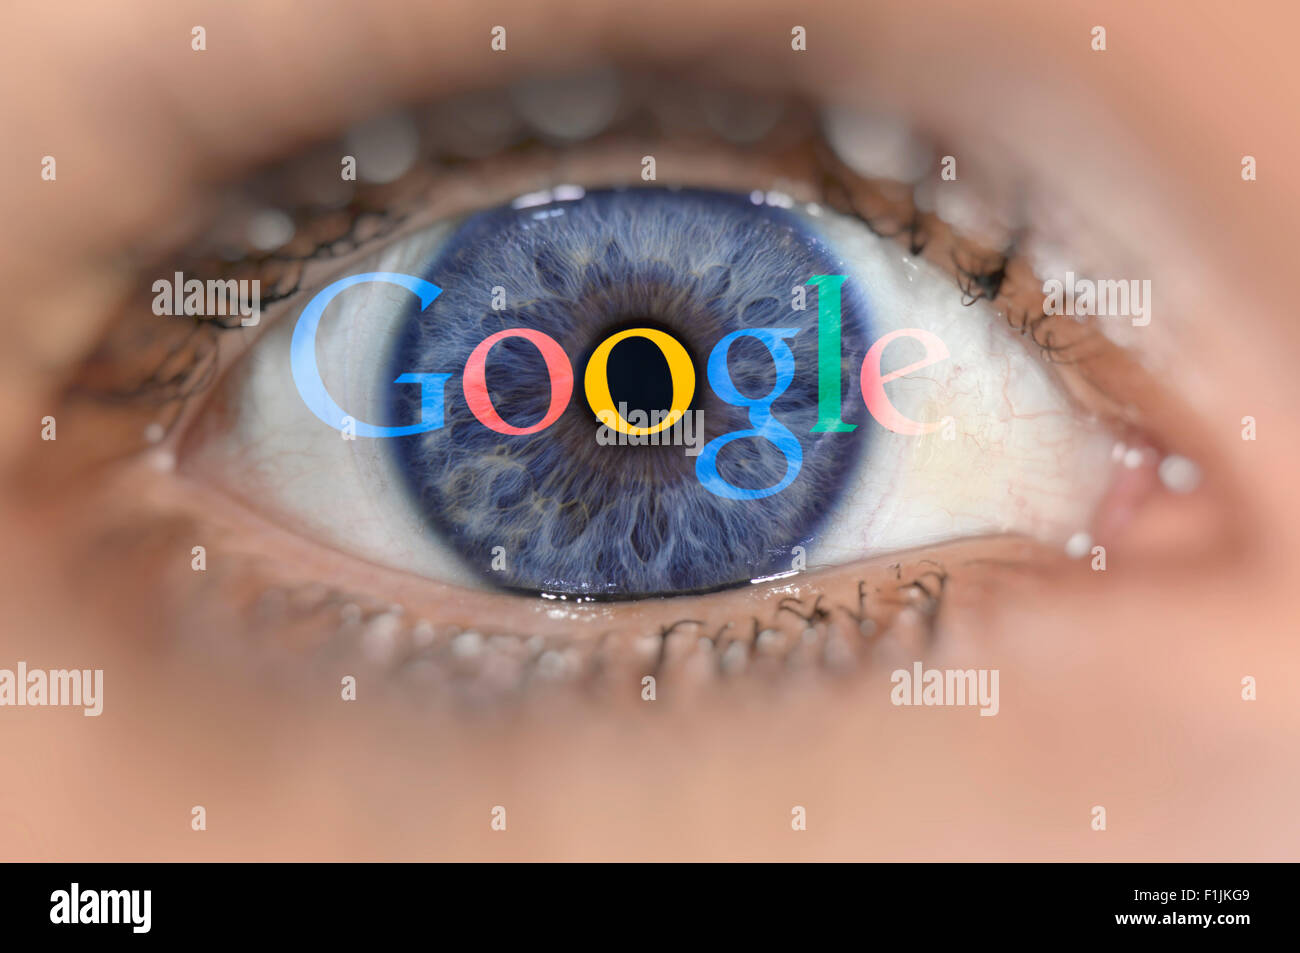 Blue Eye avec le logo Google sur iris, image symbolique, la sécurité des données Banque D'Images